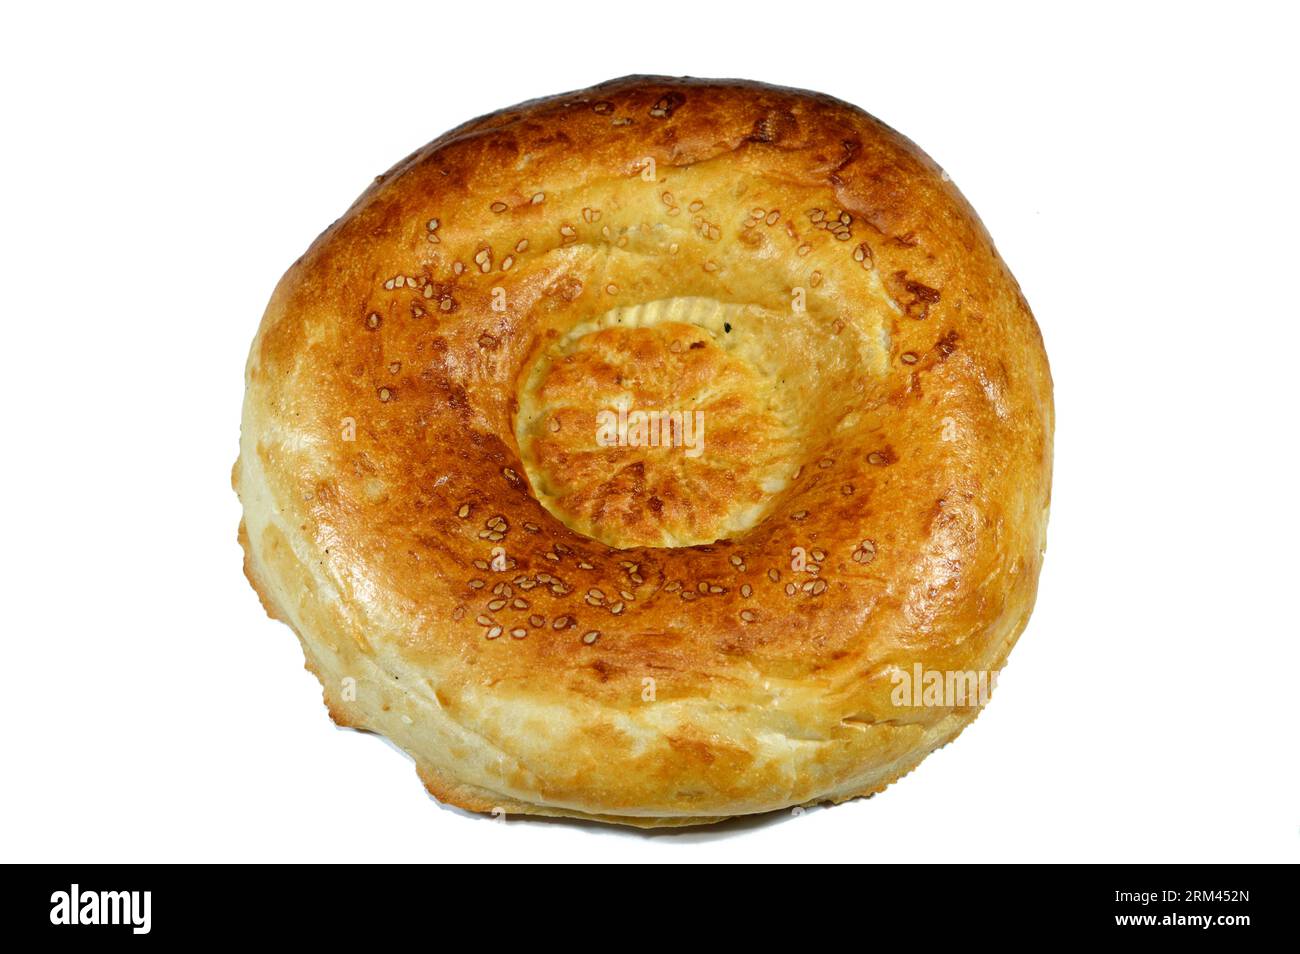 Tandyr nan usbekisches Brot, eine Art zentralasiatisches Brot, das oft mit Stempelmustern auf den Teig mit einem Brotstempel verziert wird, der als Chekich al bekannt ist Stockfoto